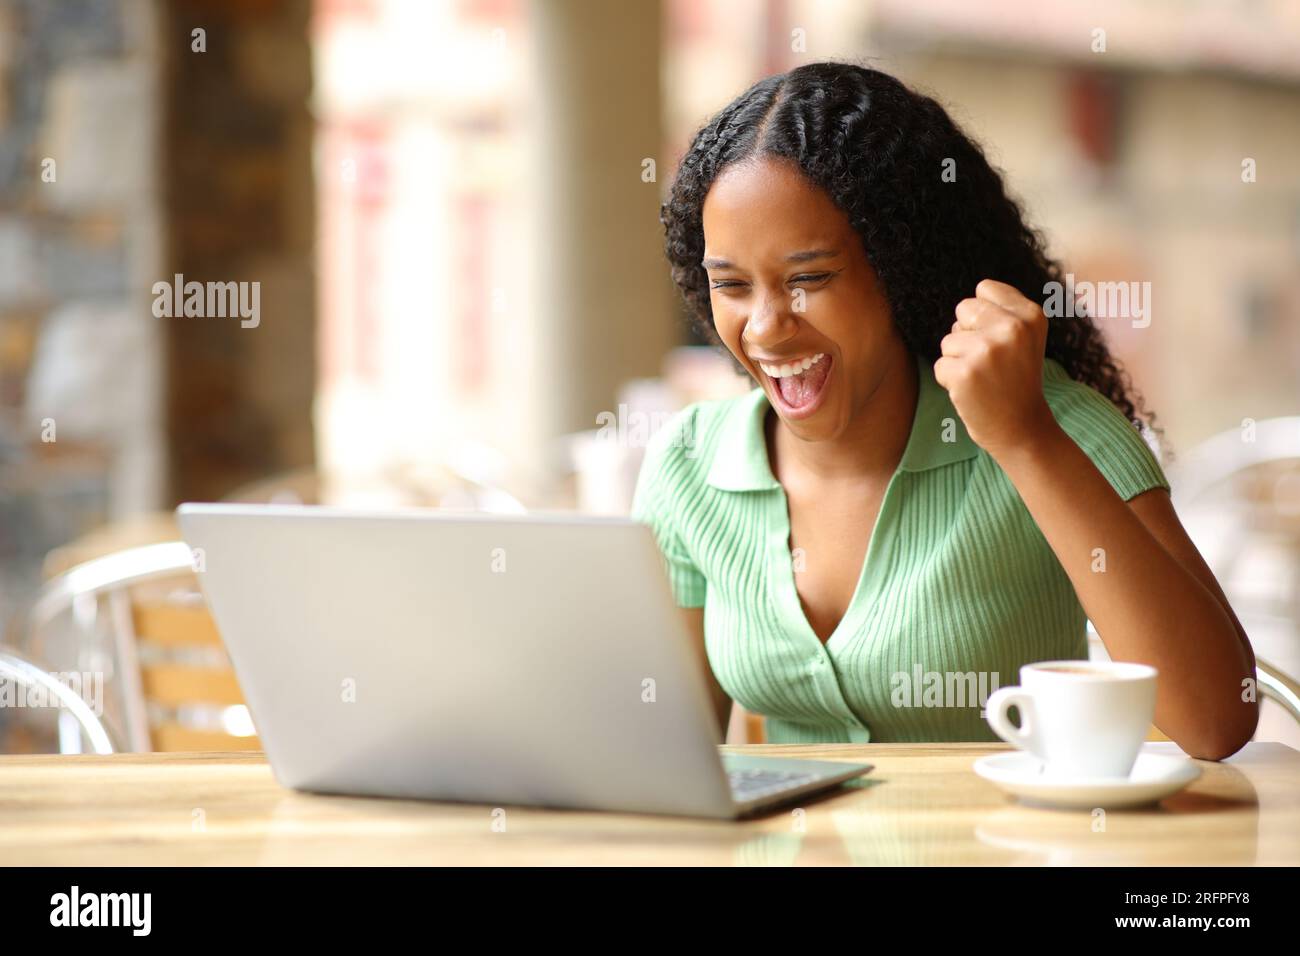 Aufgeregte schwarze Frau, die gute Nachrichten auf einem Laptop auf einer Barterrasse überprüft Stockfoto